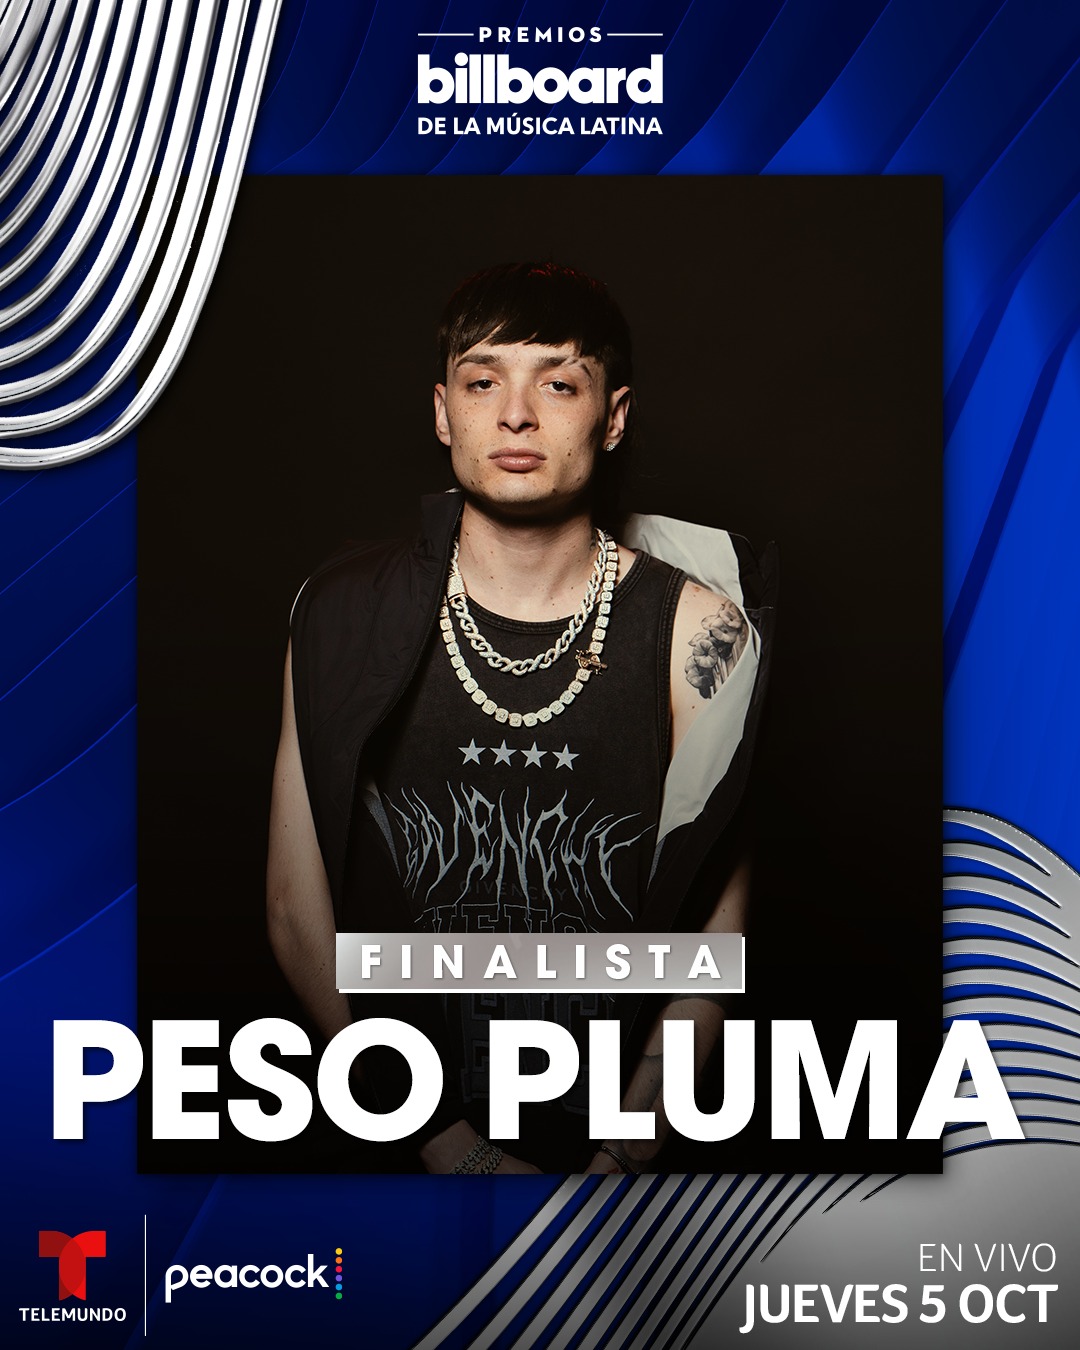 PESO PLUMA brilla como el artista mas nominado en Premios Billboard 2023